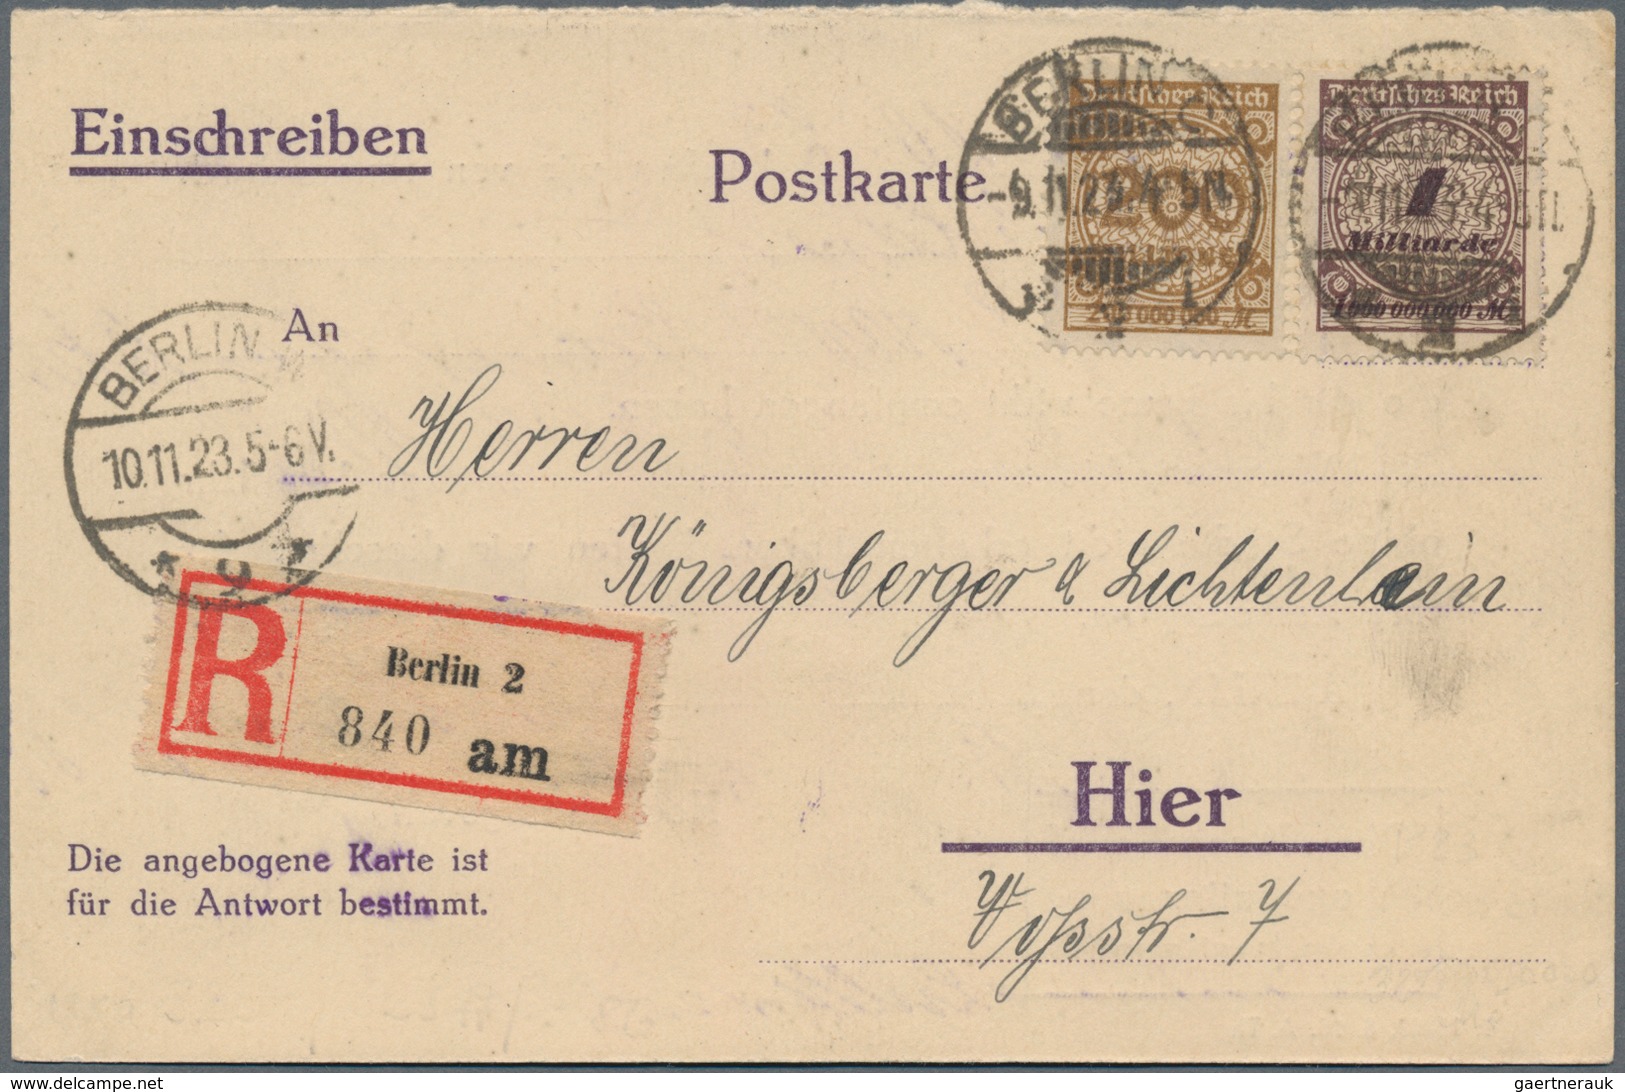 Deutsches Reich - Inflation: 1919/1923, hochwertiger Sammlungsbestand mit ca.80 zumeist besseren Bel